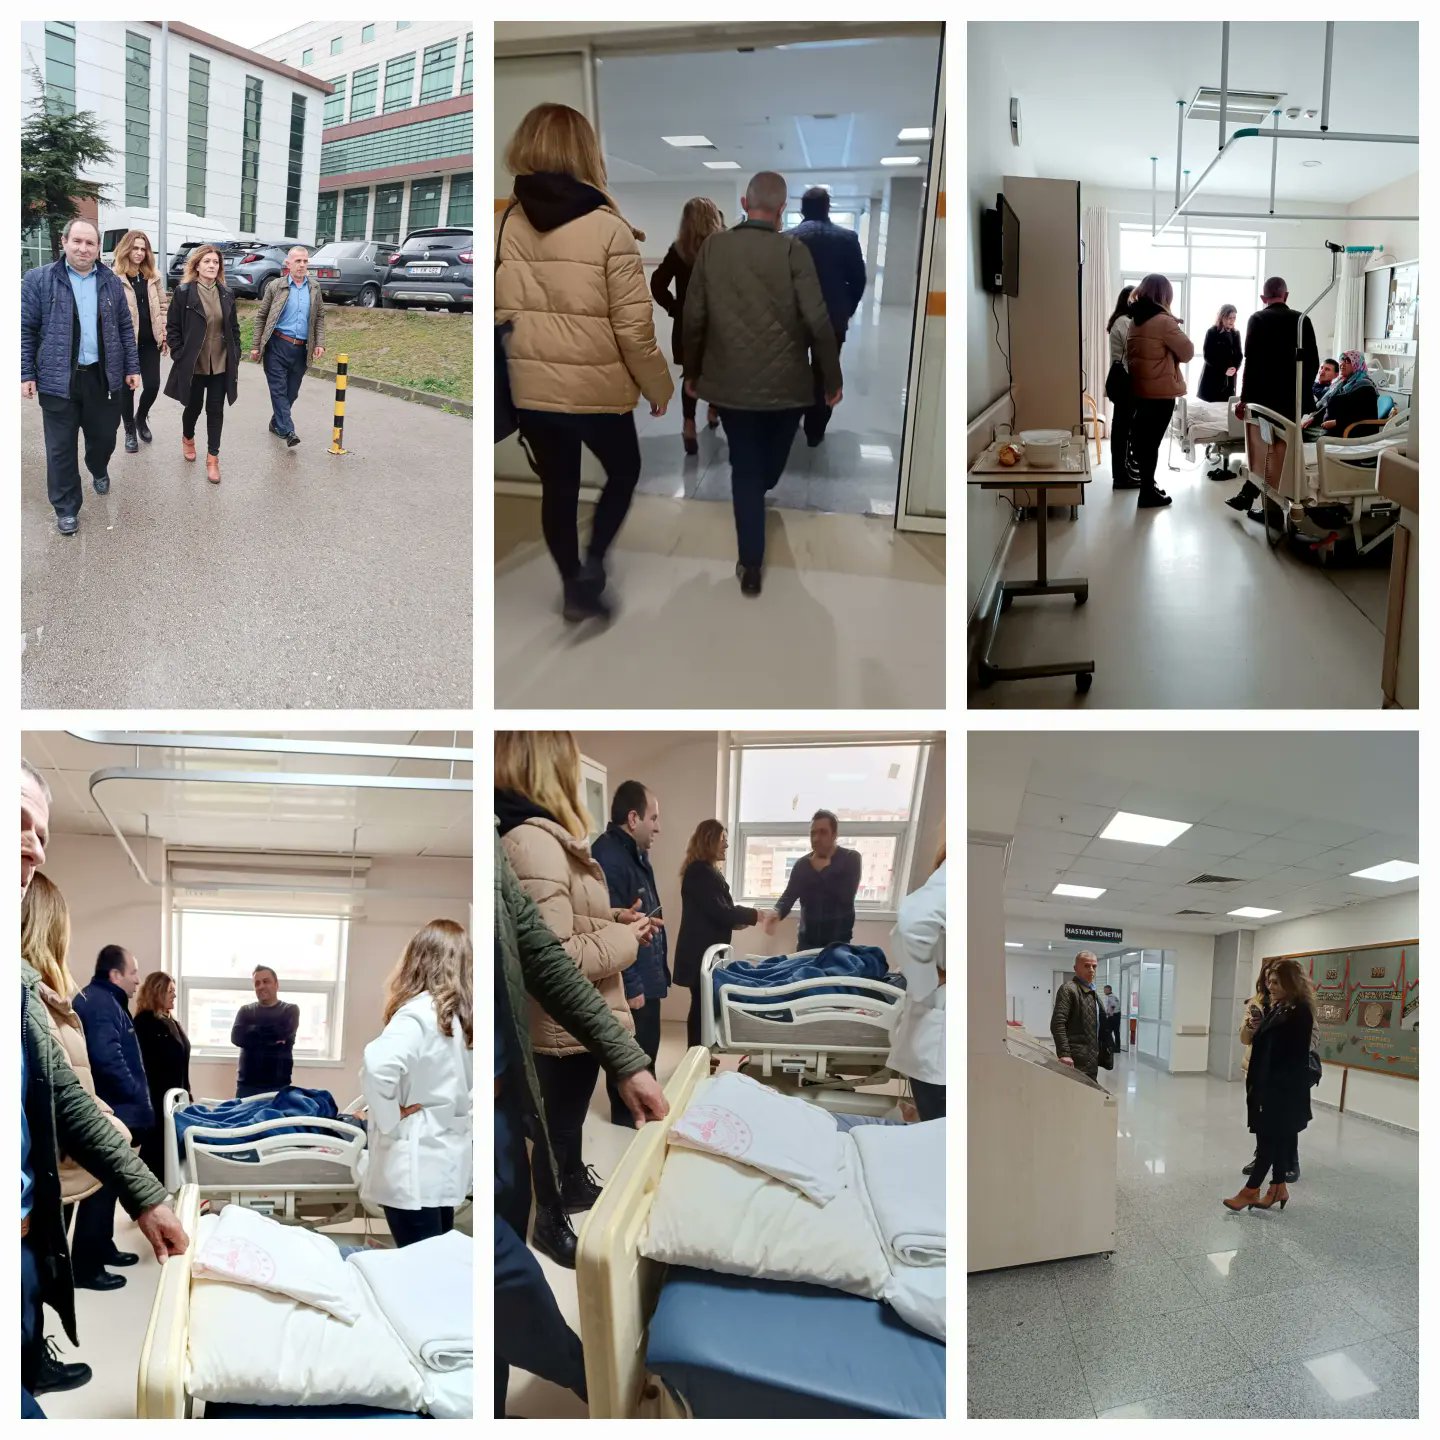 İl Başkanımız Serap Çakır, İzmit ilçe başkanımız Ömer Uçar, yönetimimizle,deprem bölgesinden ilimize getirilen vatandaşlarımızı, Kocaeli Üniversitesi Hastanesi'nde ziyaret ettik.